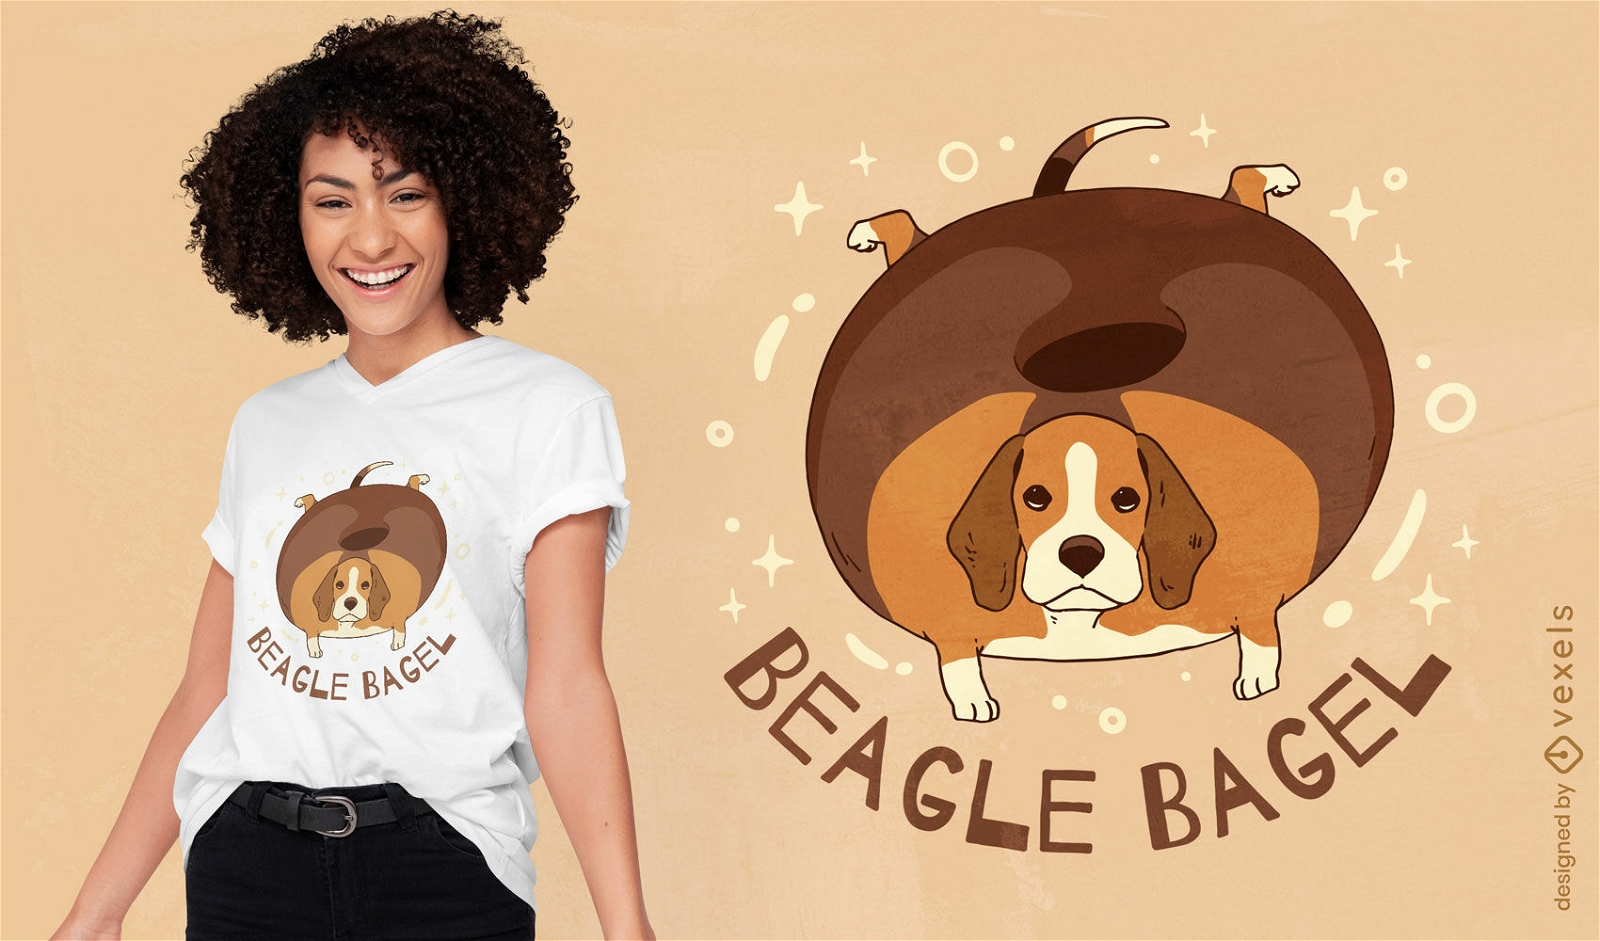 Beagle bagel dog funny t-shirt design